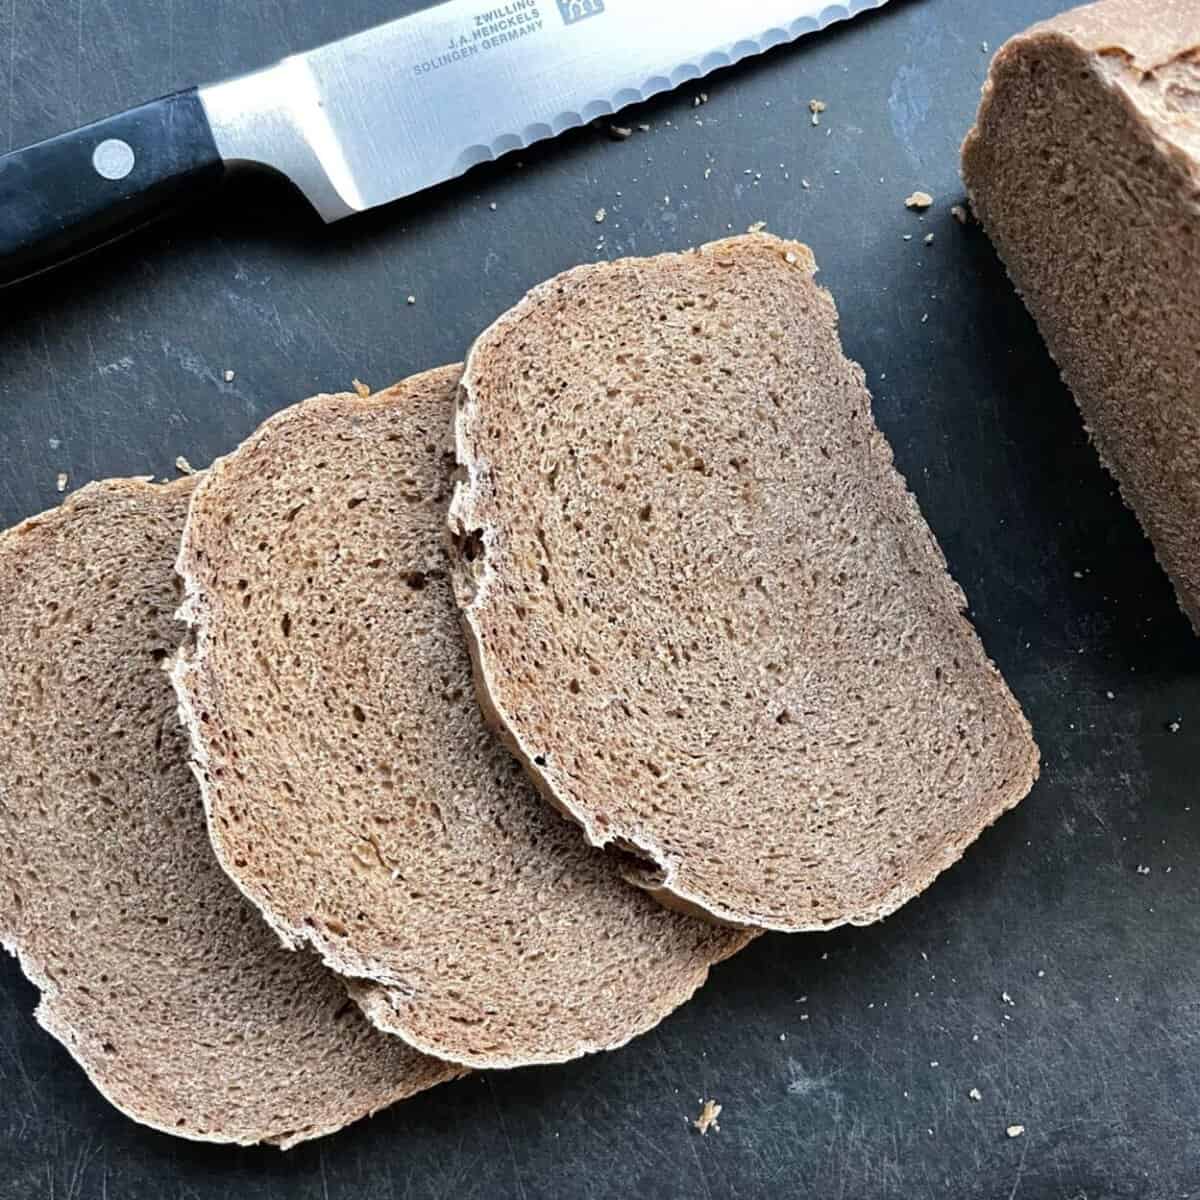 Russian Rye Sandwich Bread Recipe